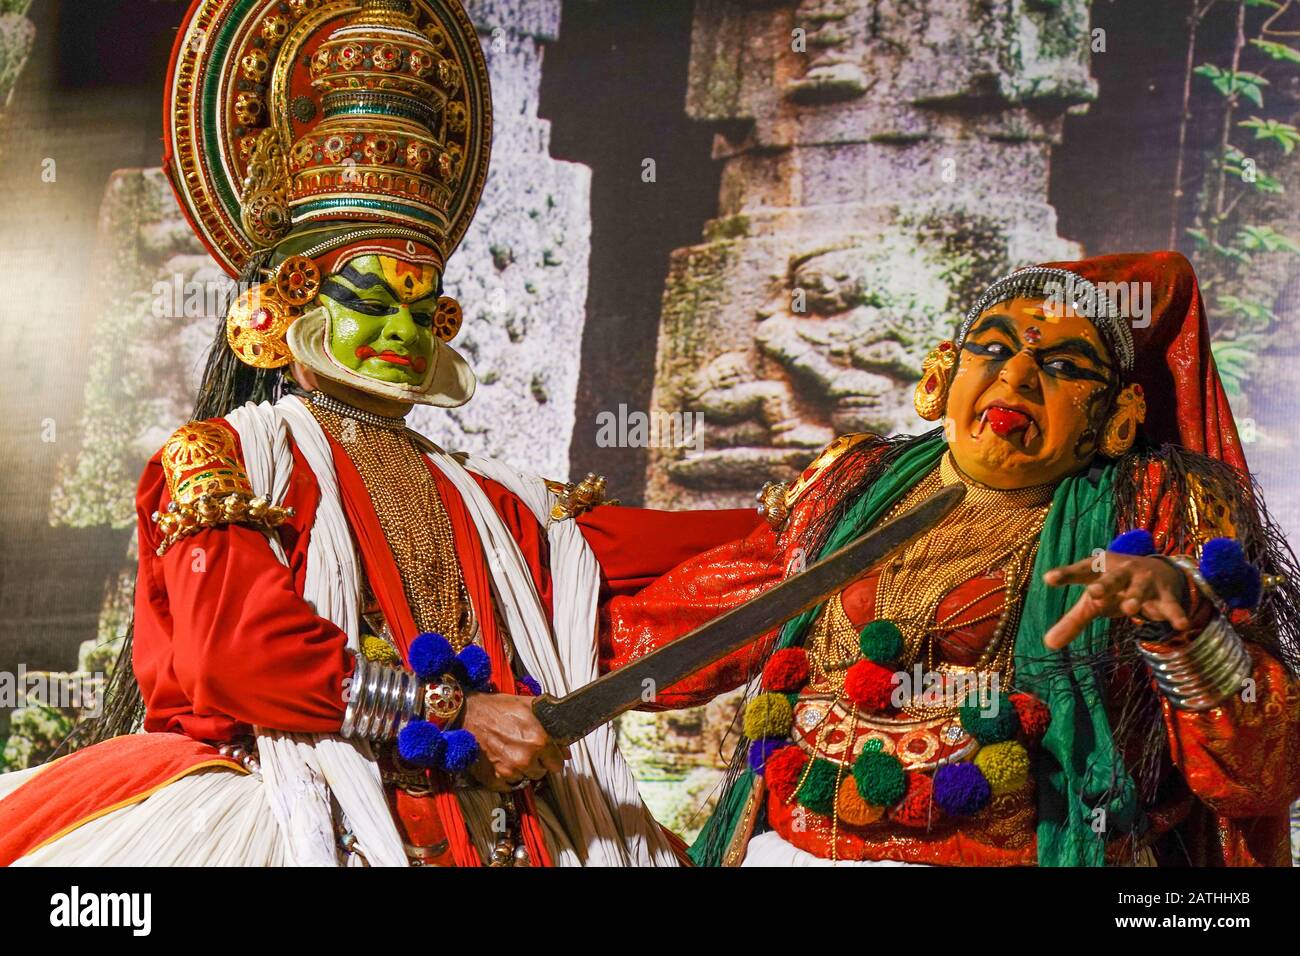 Eine Aufführung von Narakasuravadham. Aus einer Reihe von Reisefotos in Kerala, Südindien. Fotodatum: Freitag, 17. Januar 2020. Foto: Roger Garfield/ Stockfoto